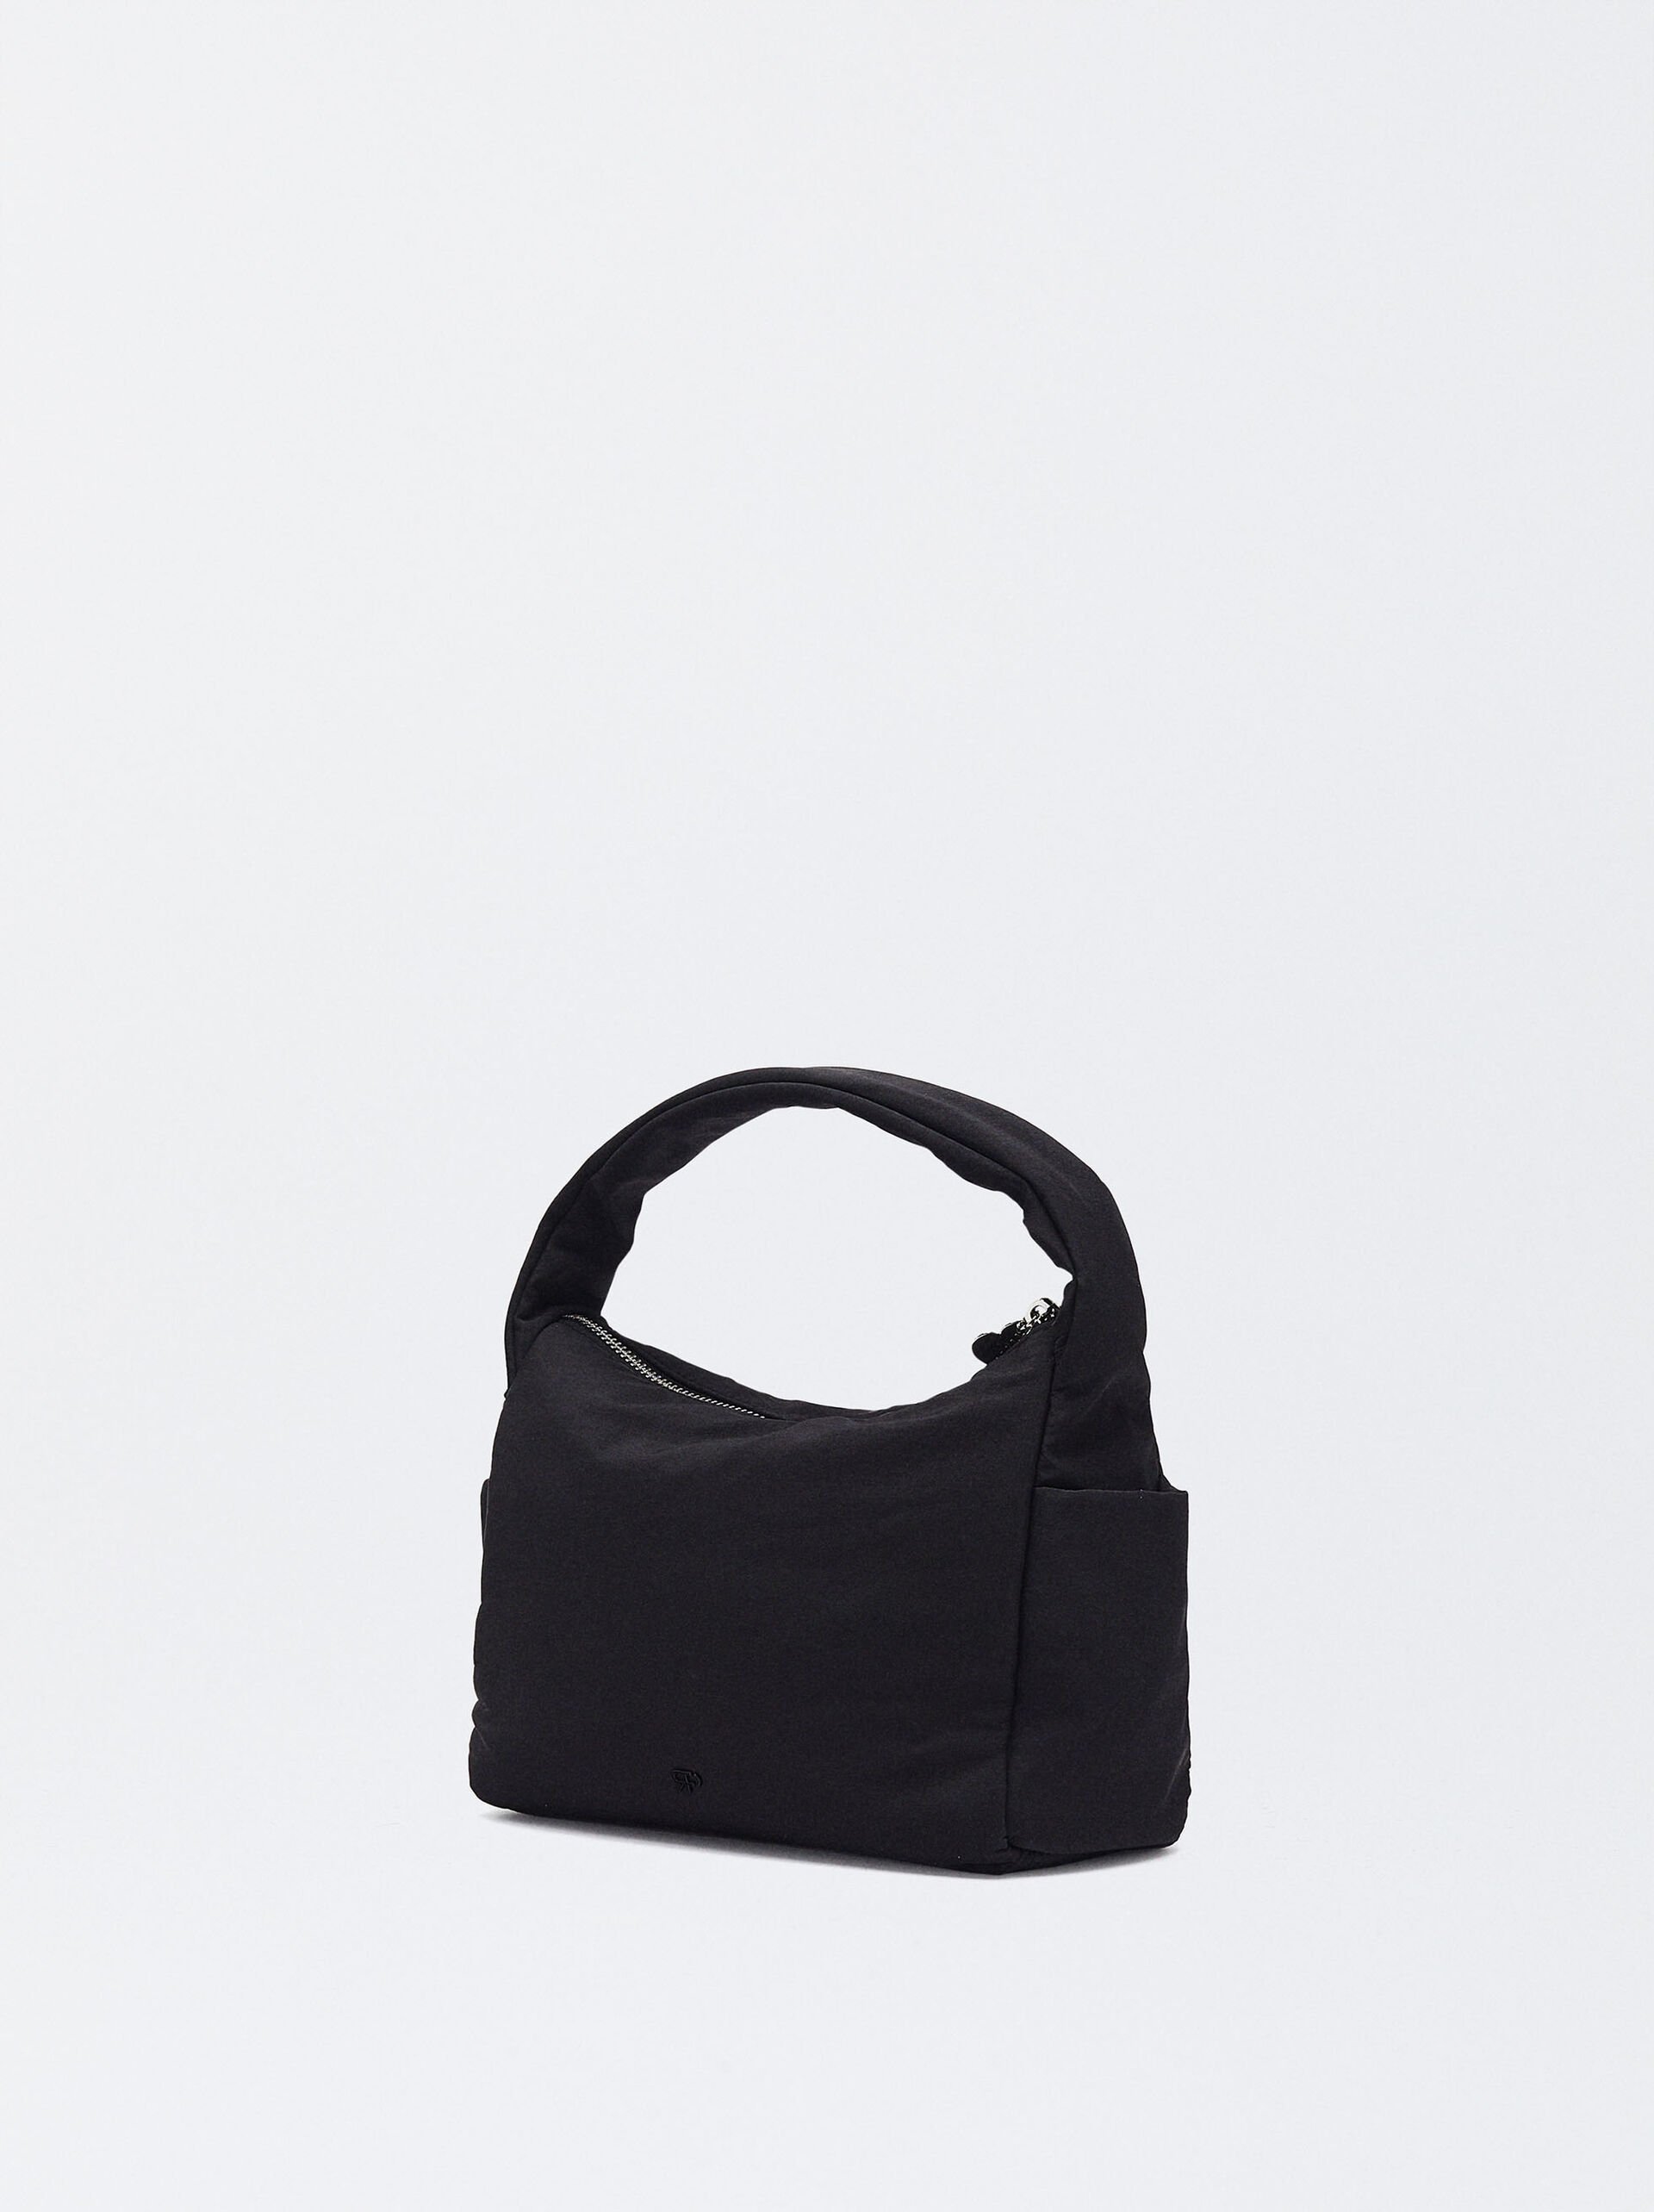 Online Exclusive - Nylon Shoulder Bag Love image number 3.0